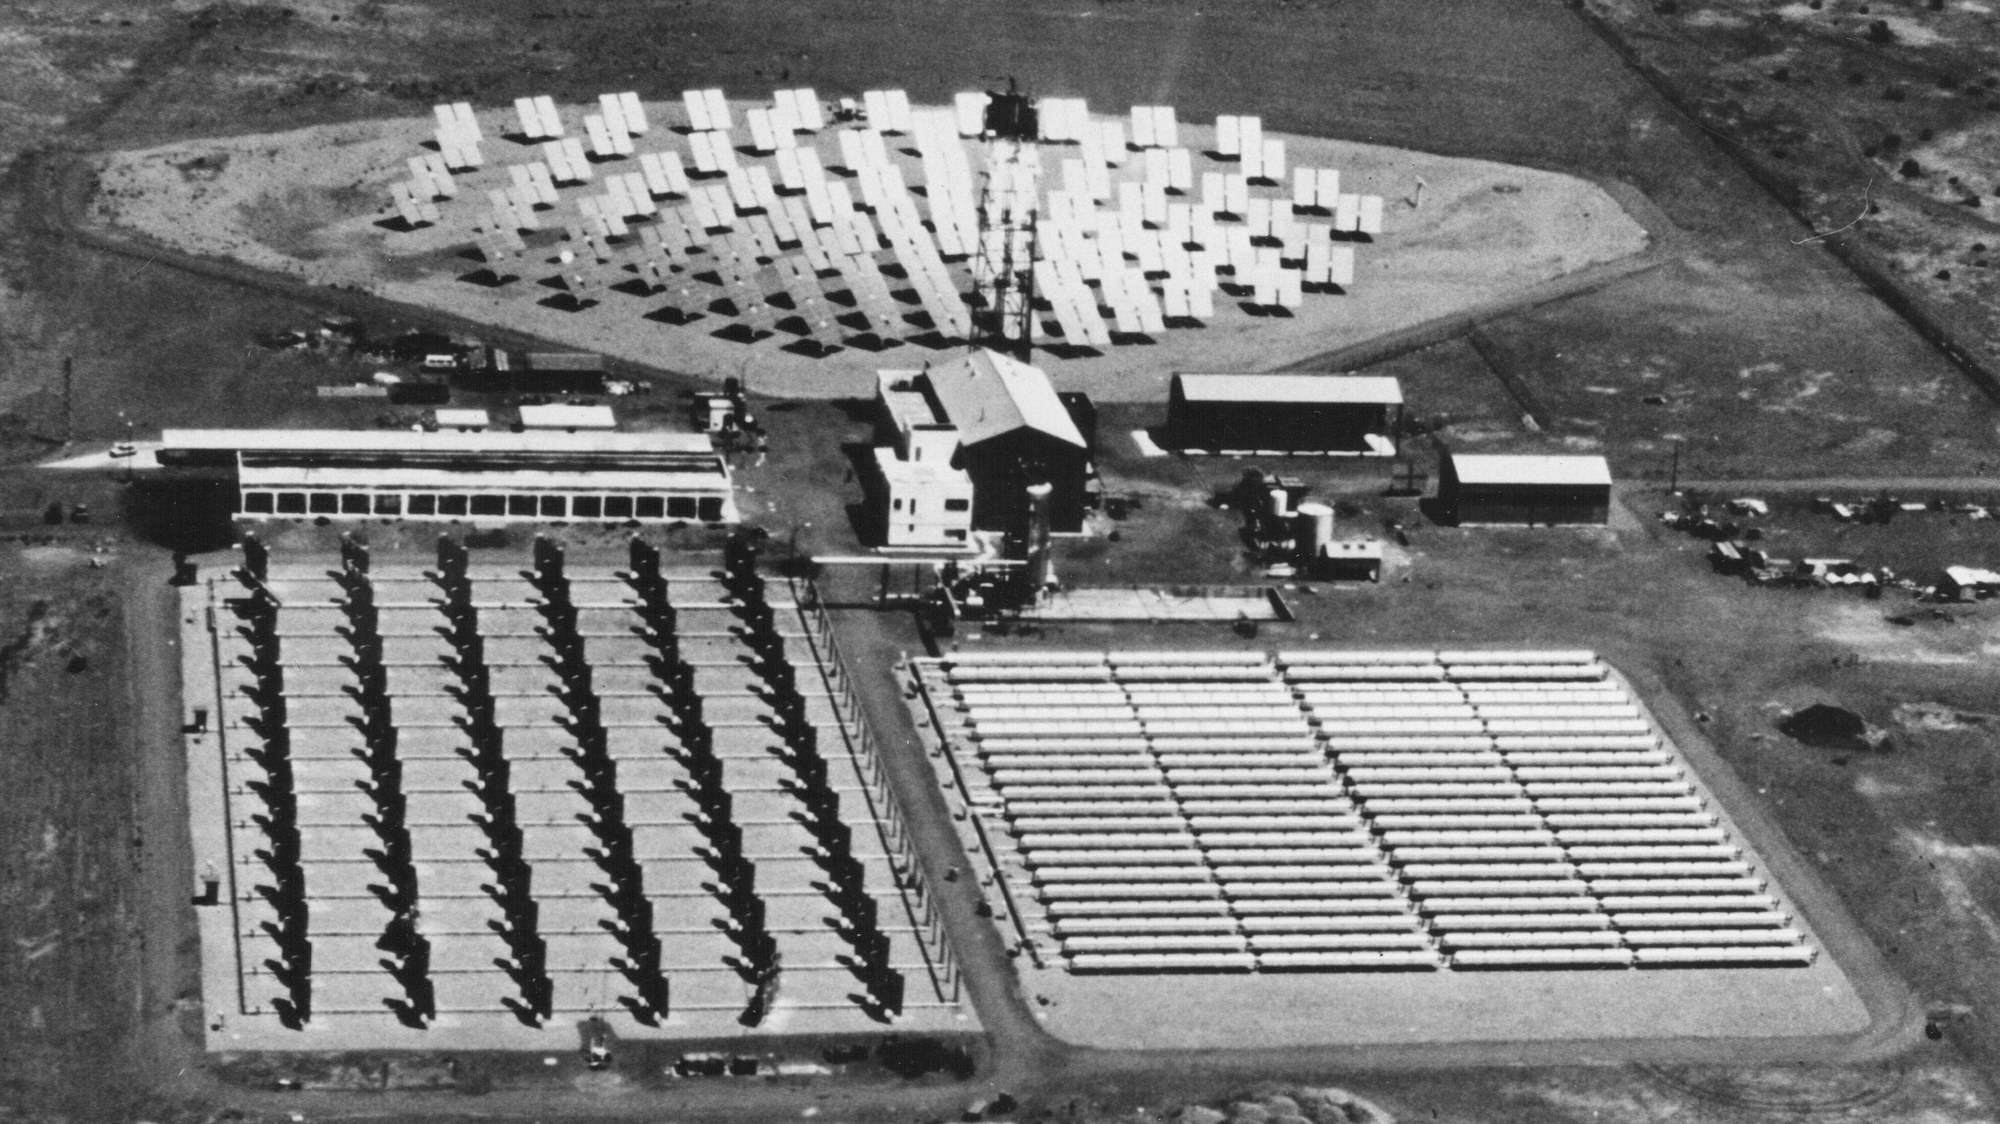 Plataforma Solar de Almería at the start of the 1980s